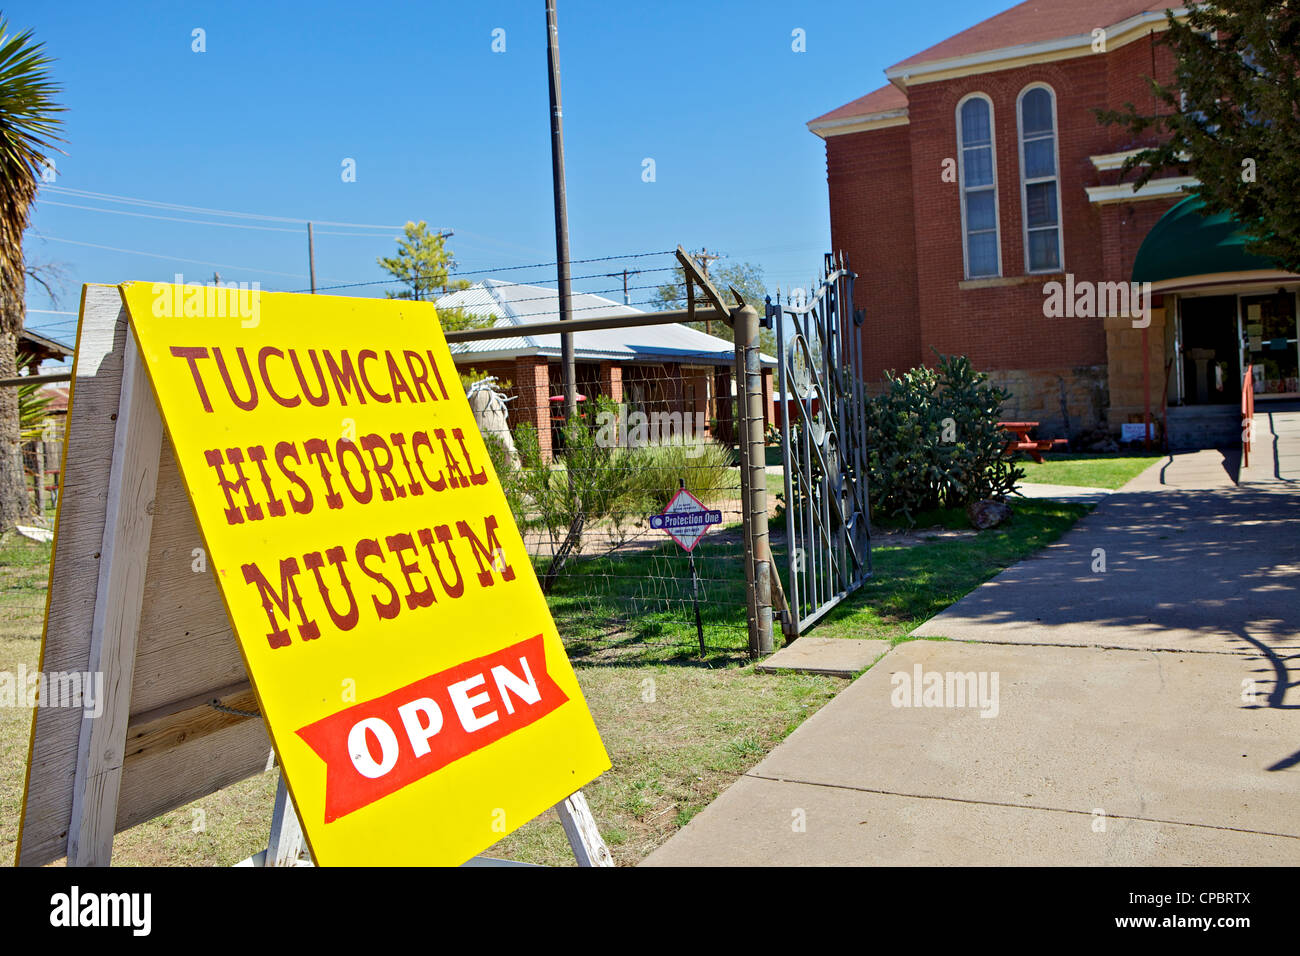 Tucumcari Historical Museum sign, Tucumcari, New Mexico, USA Stock Photo